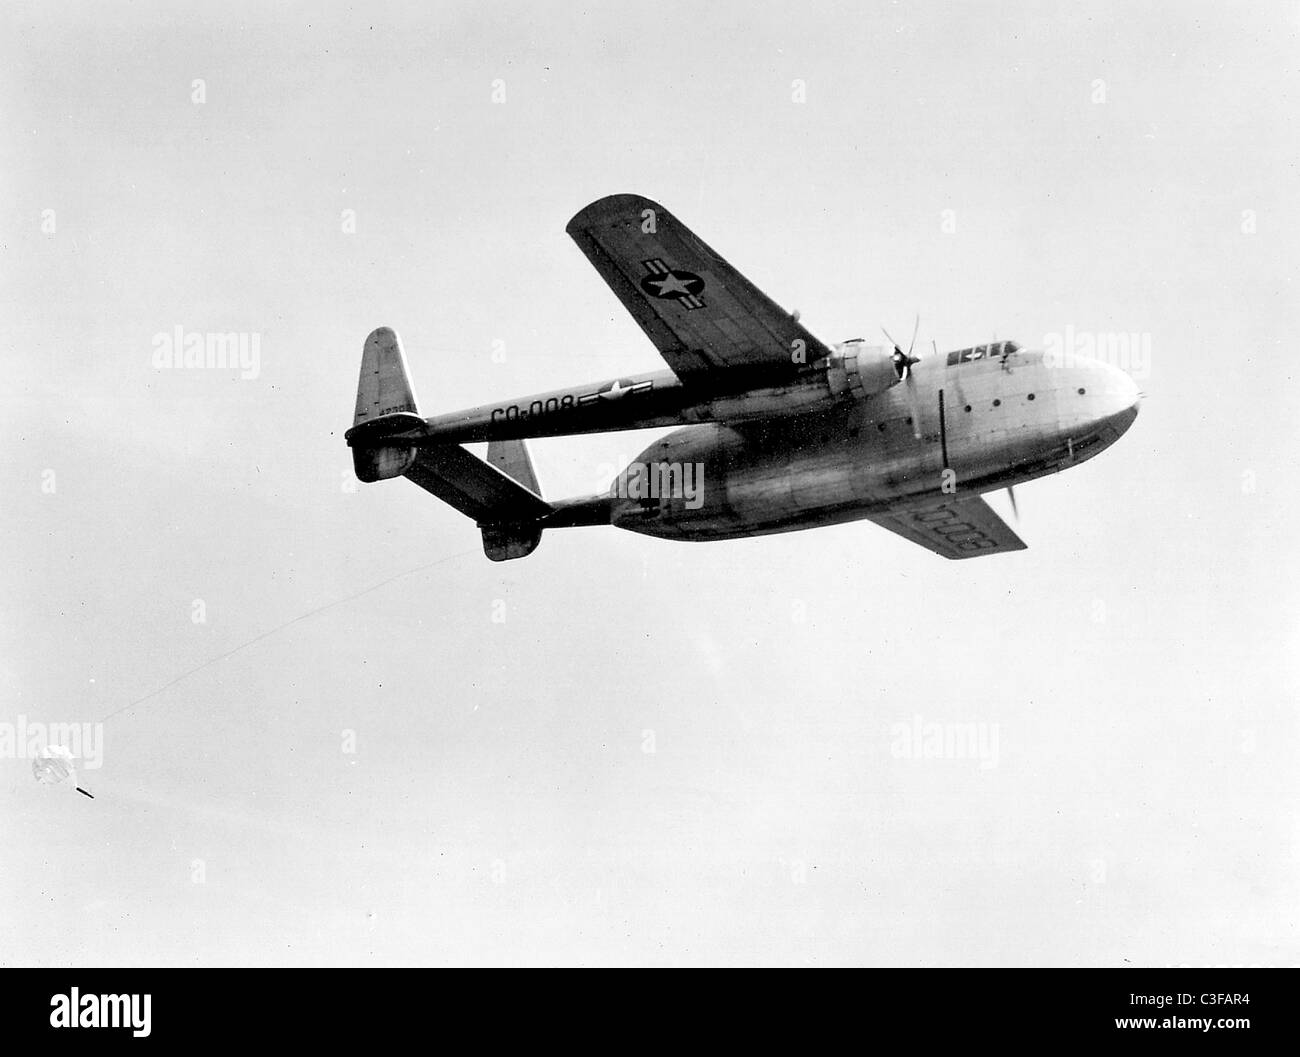 C-82 Paket war ein zweimotoriges, Twin-Boom Frachtflugzeug entworfen und  gebaut von Fairchild Aircraft Stockfotografie - Alamy